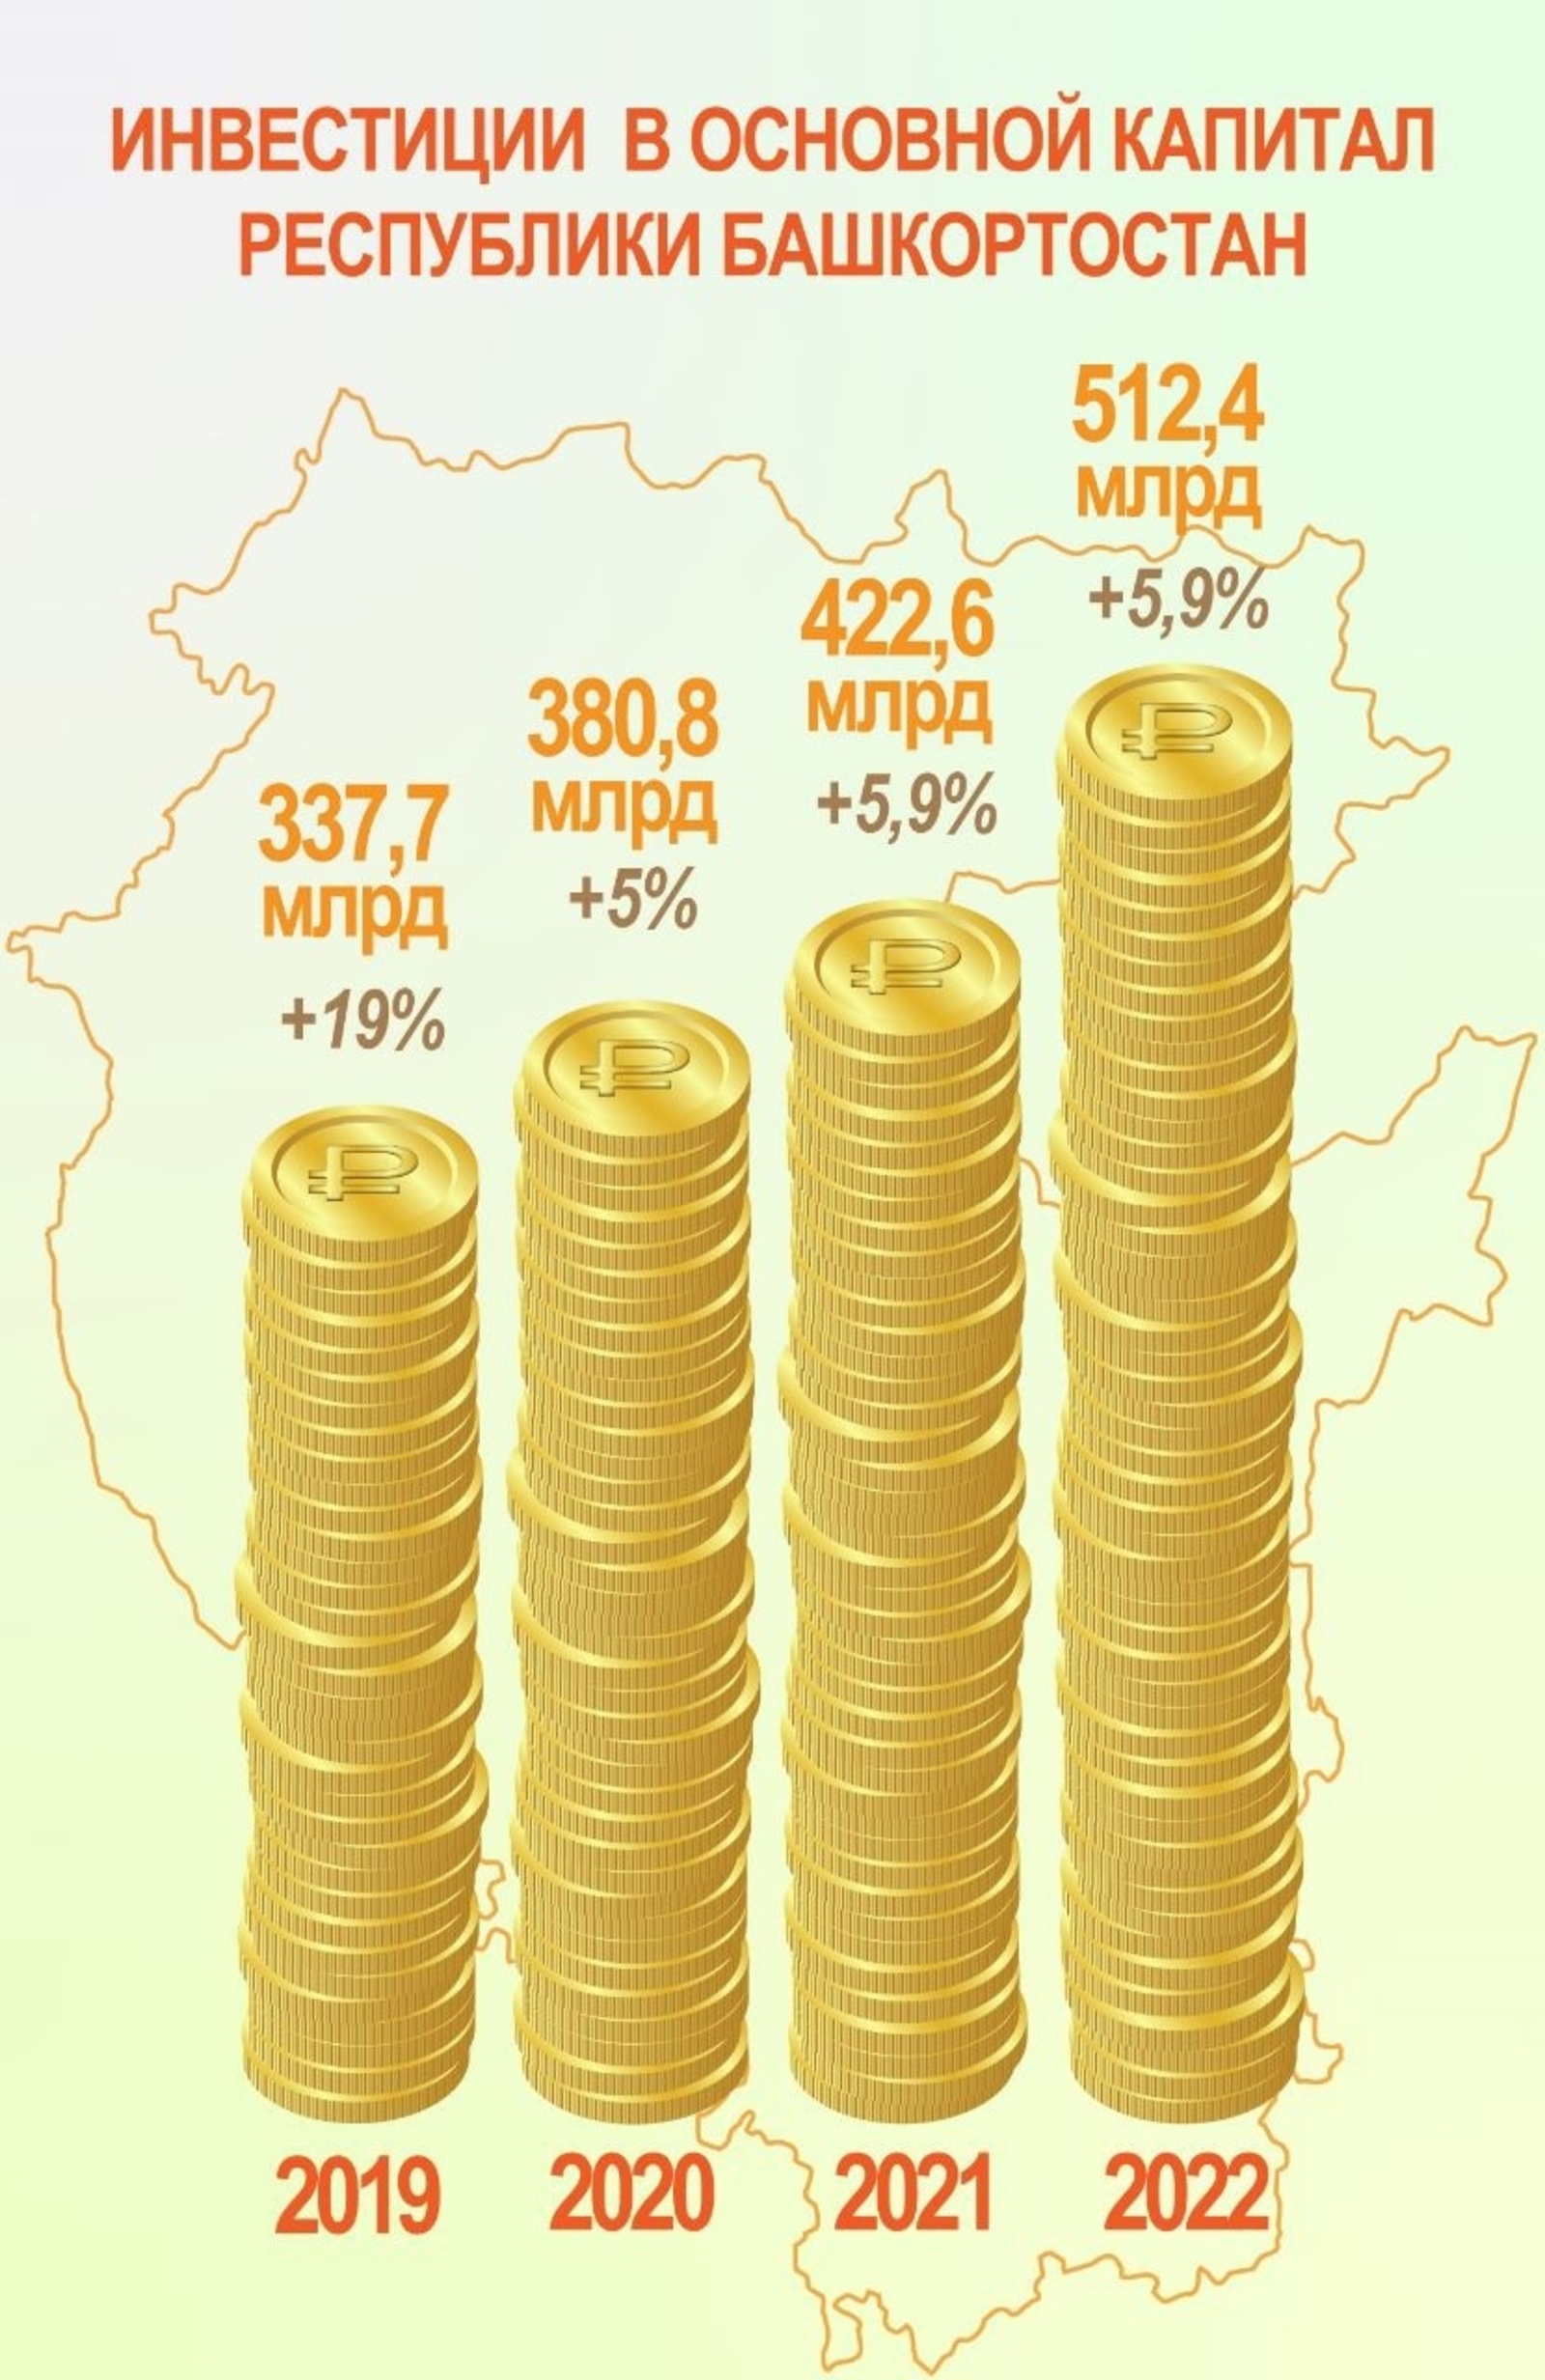 Объем инвестиций в экономику Башкортостана по итогам 2022 года достиг исторического максимума для республики